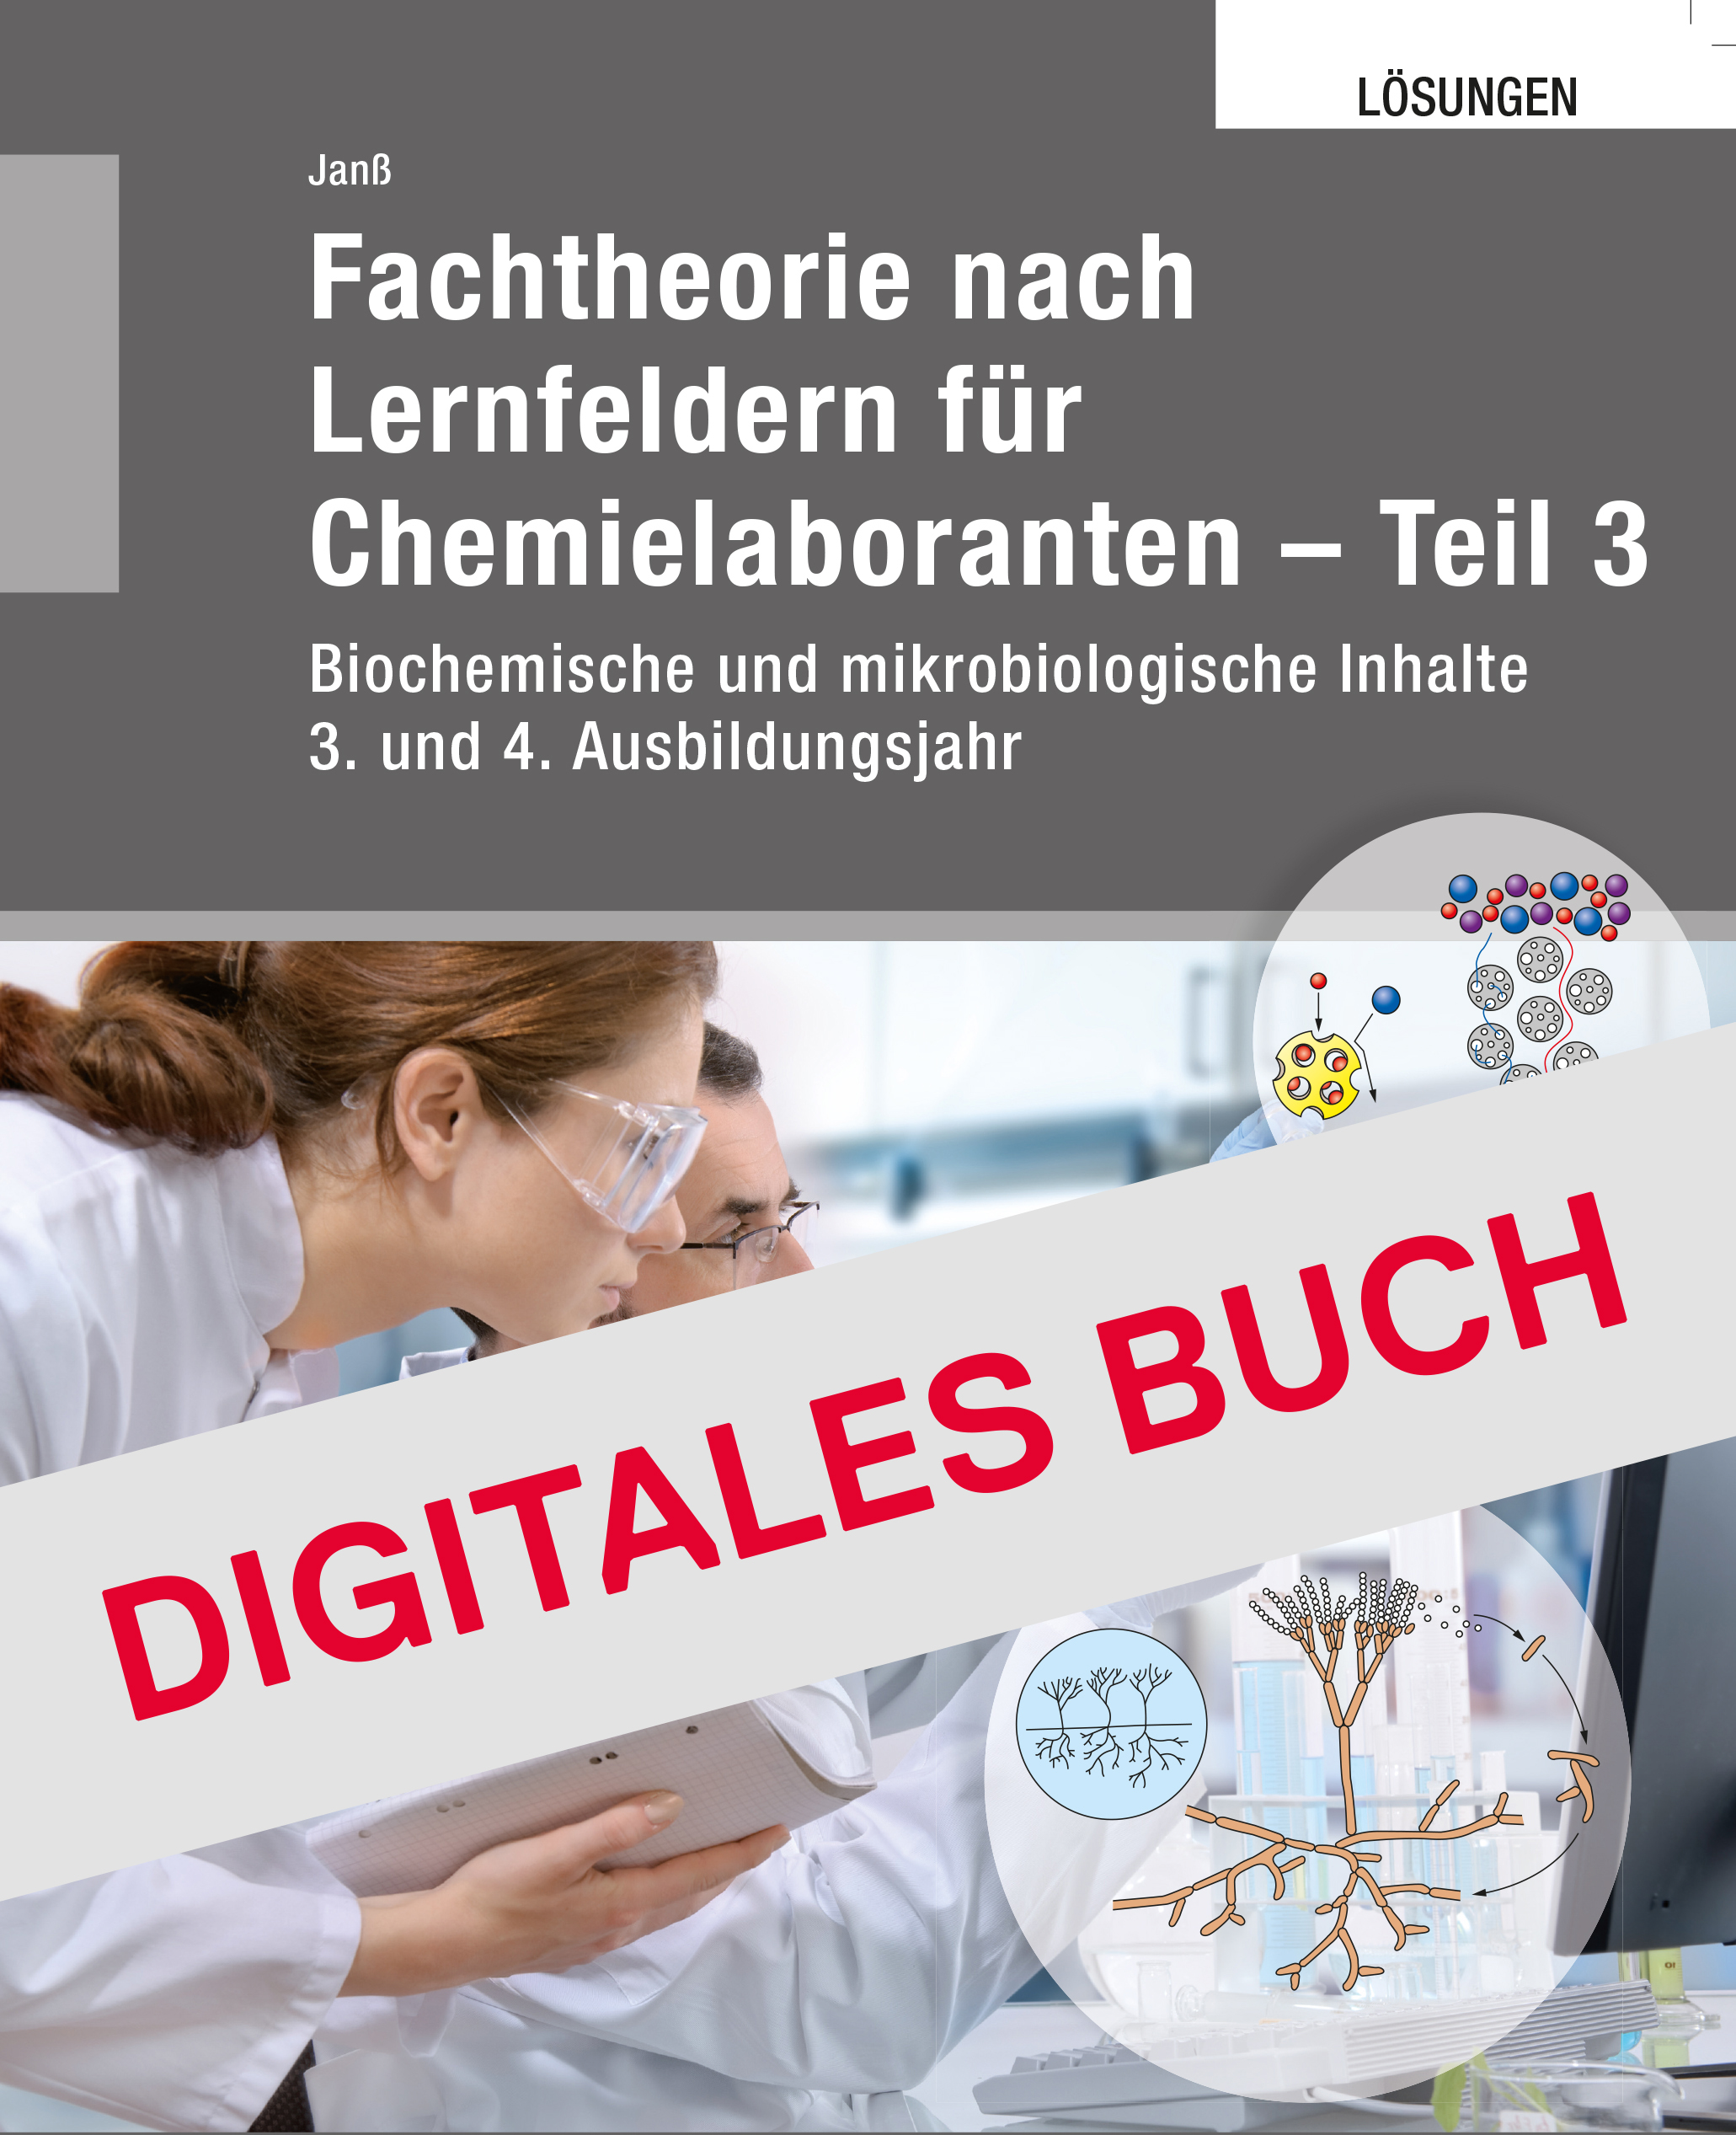 Löser Fachthoerie für Chemielaboranten Teil 3 Digitales Buch